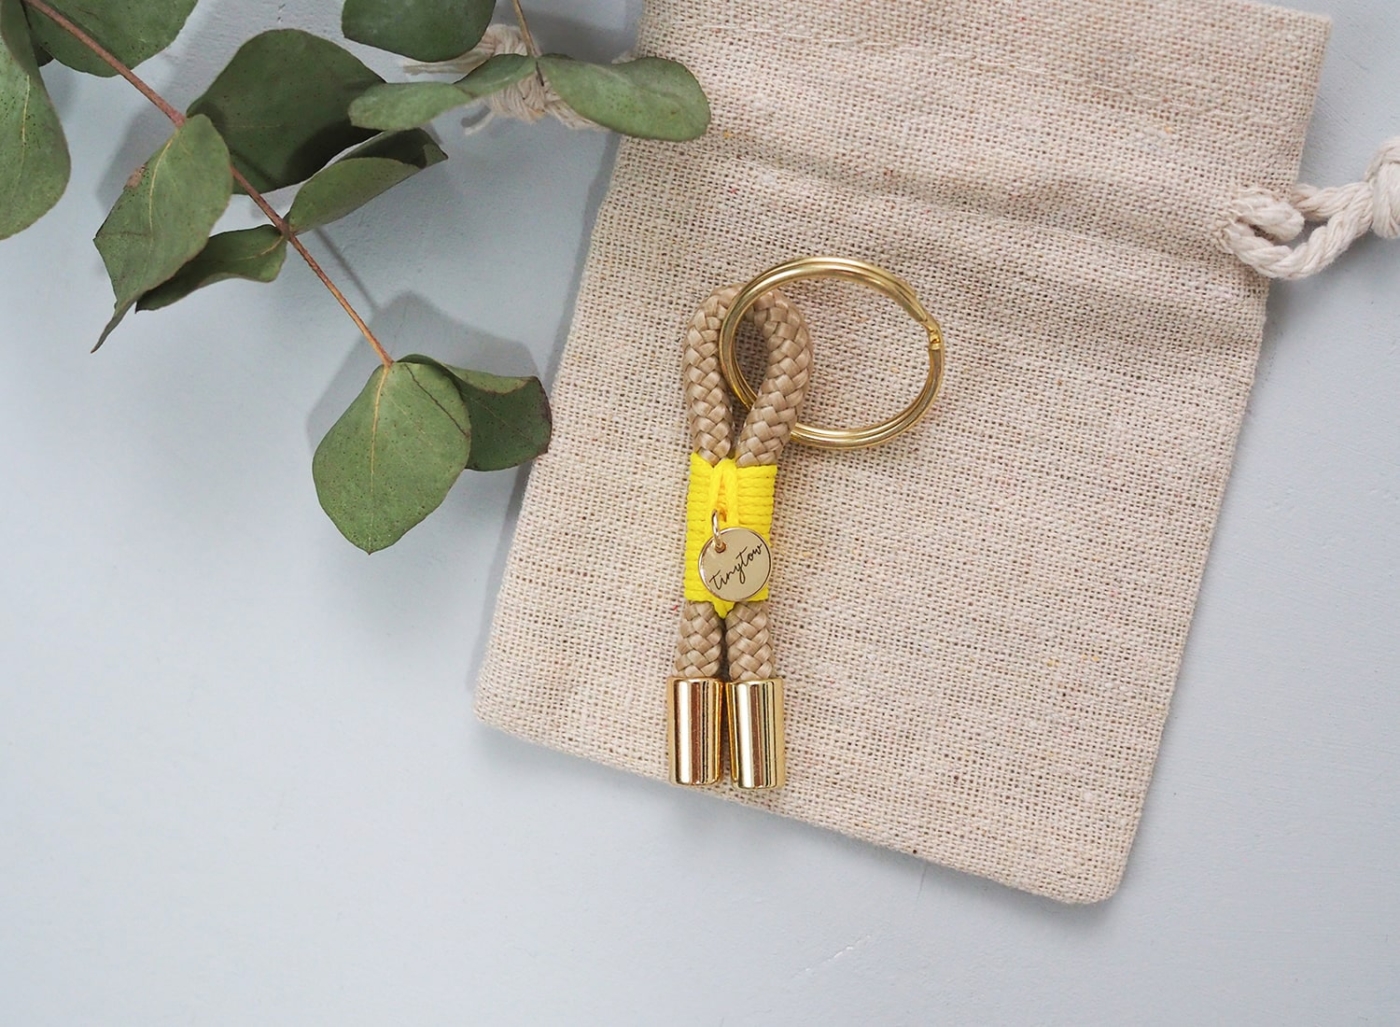 Schlüsselanhänger Towy aus beigefarbenem Tau mit leuchtgelber Takelung, goldenem Schlüsselring und Baumwollsäckchen.